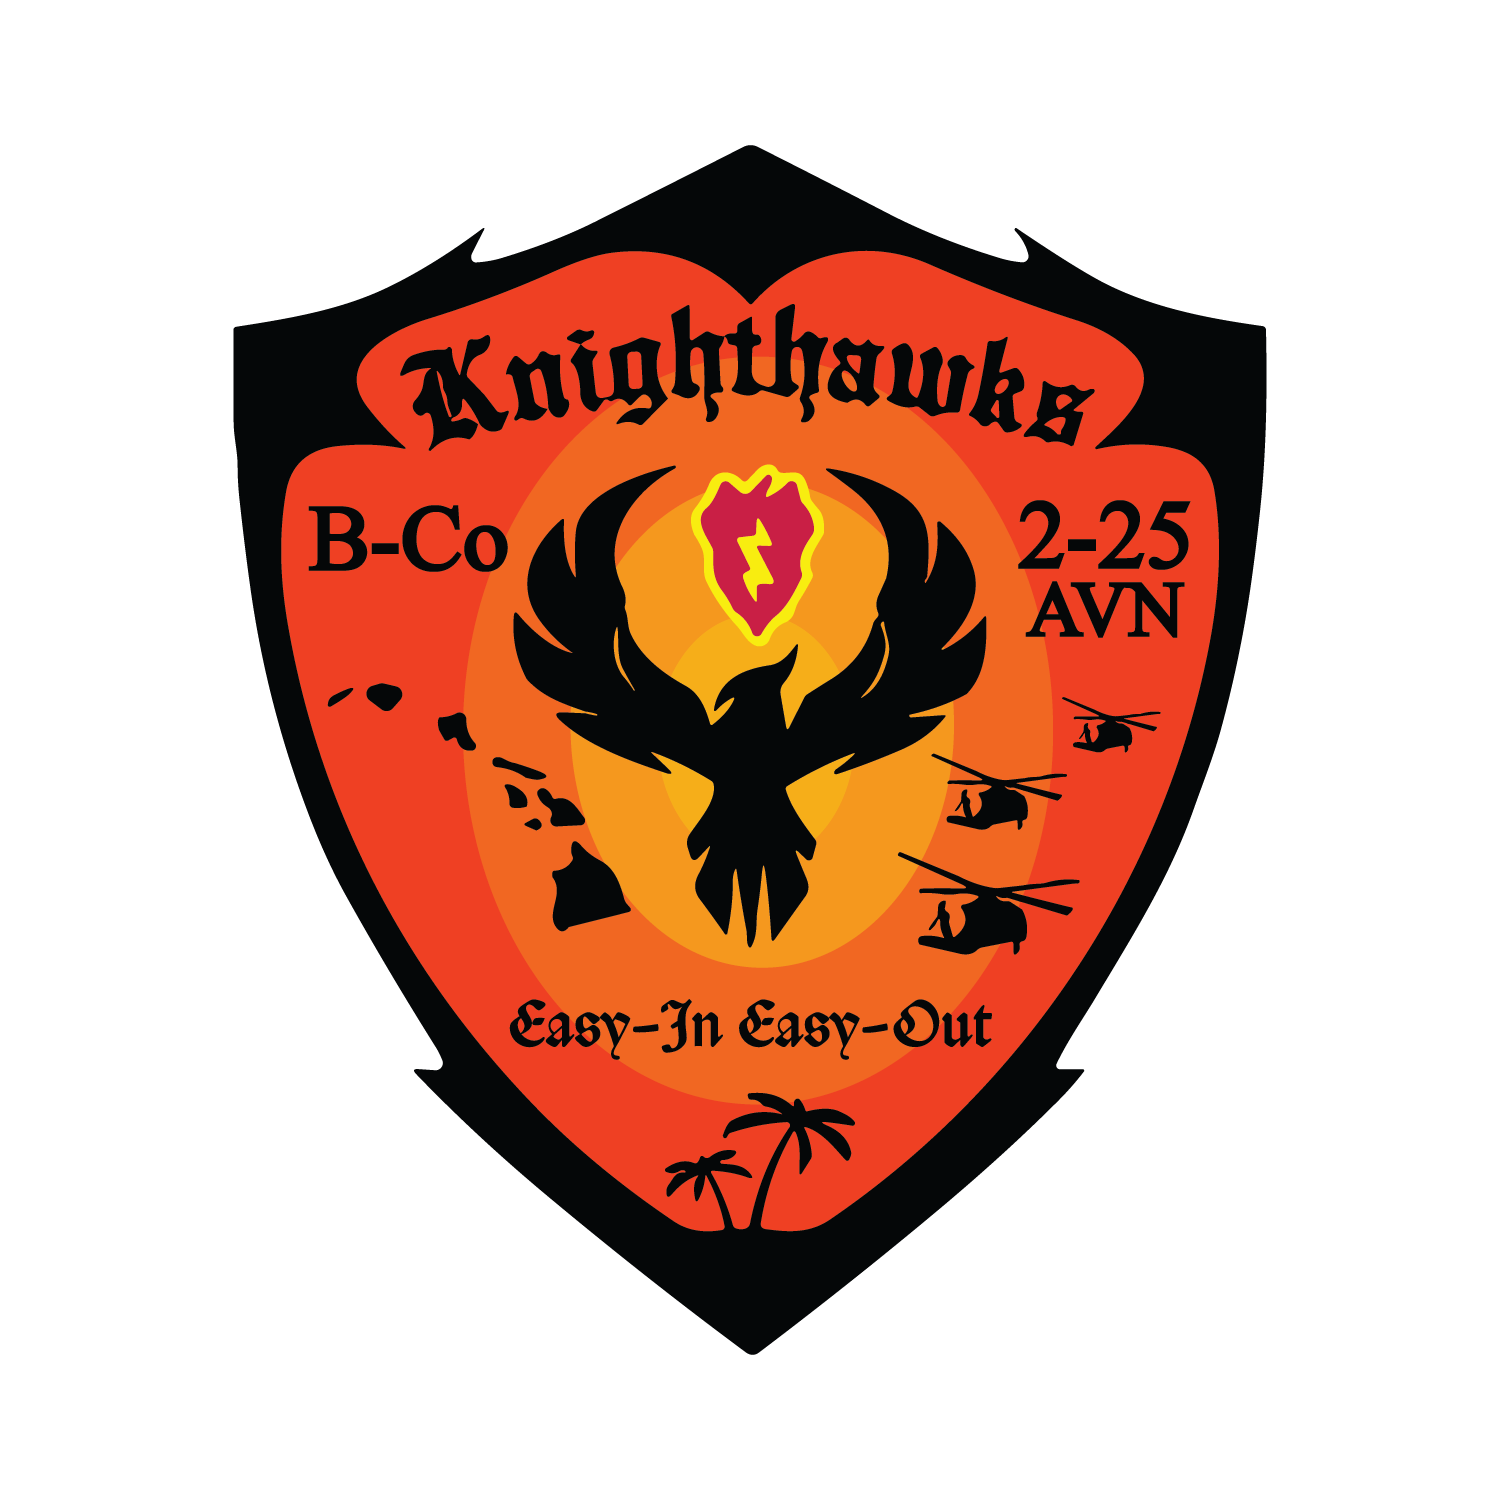 B Co, 2-25 AVN "Knighthawks"